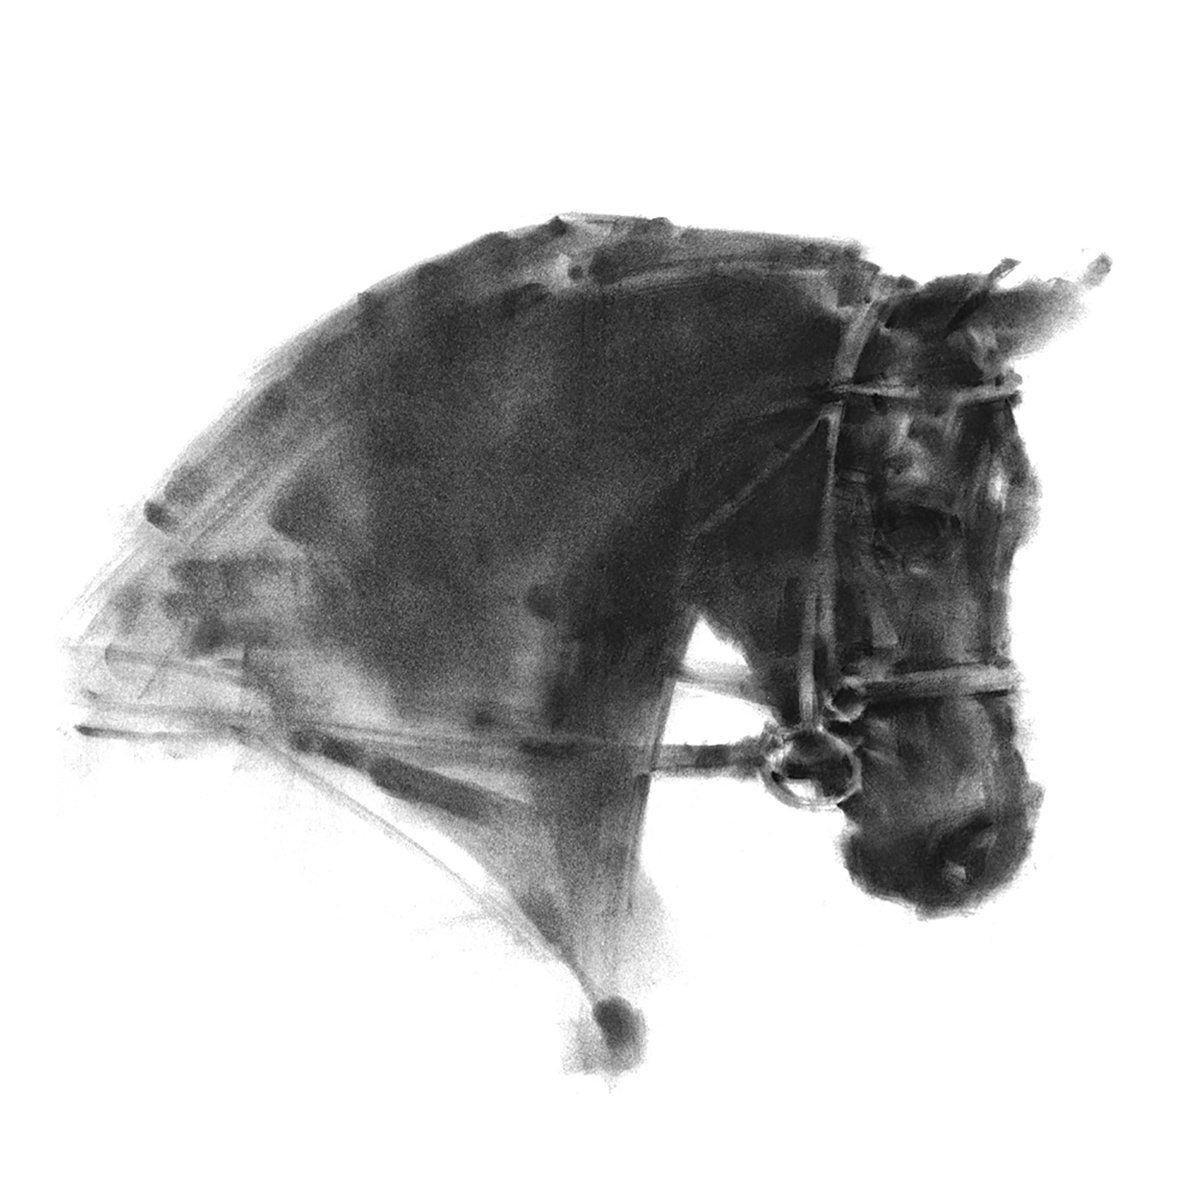 DARK HORSE by Tianyin Wang